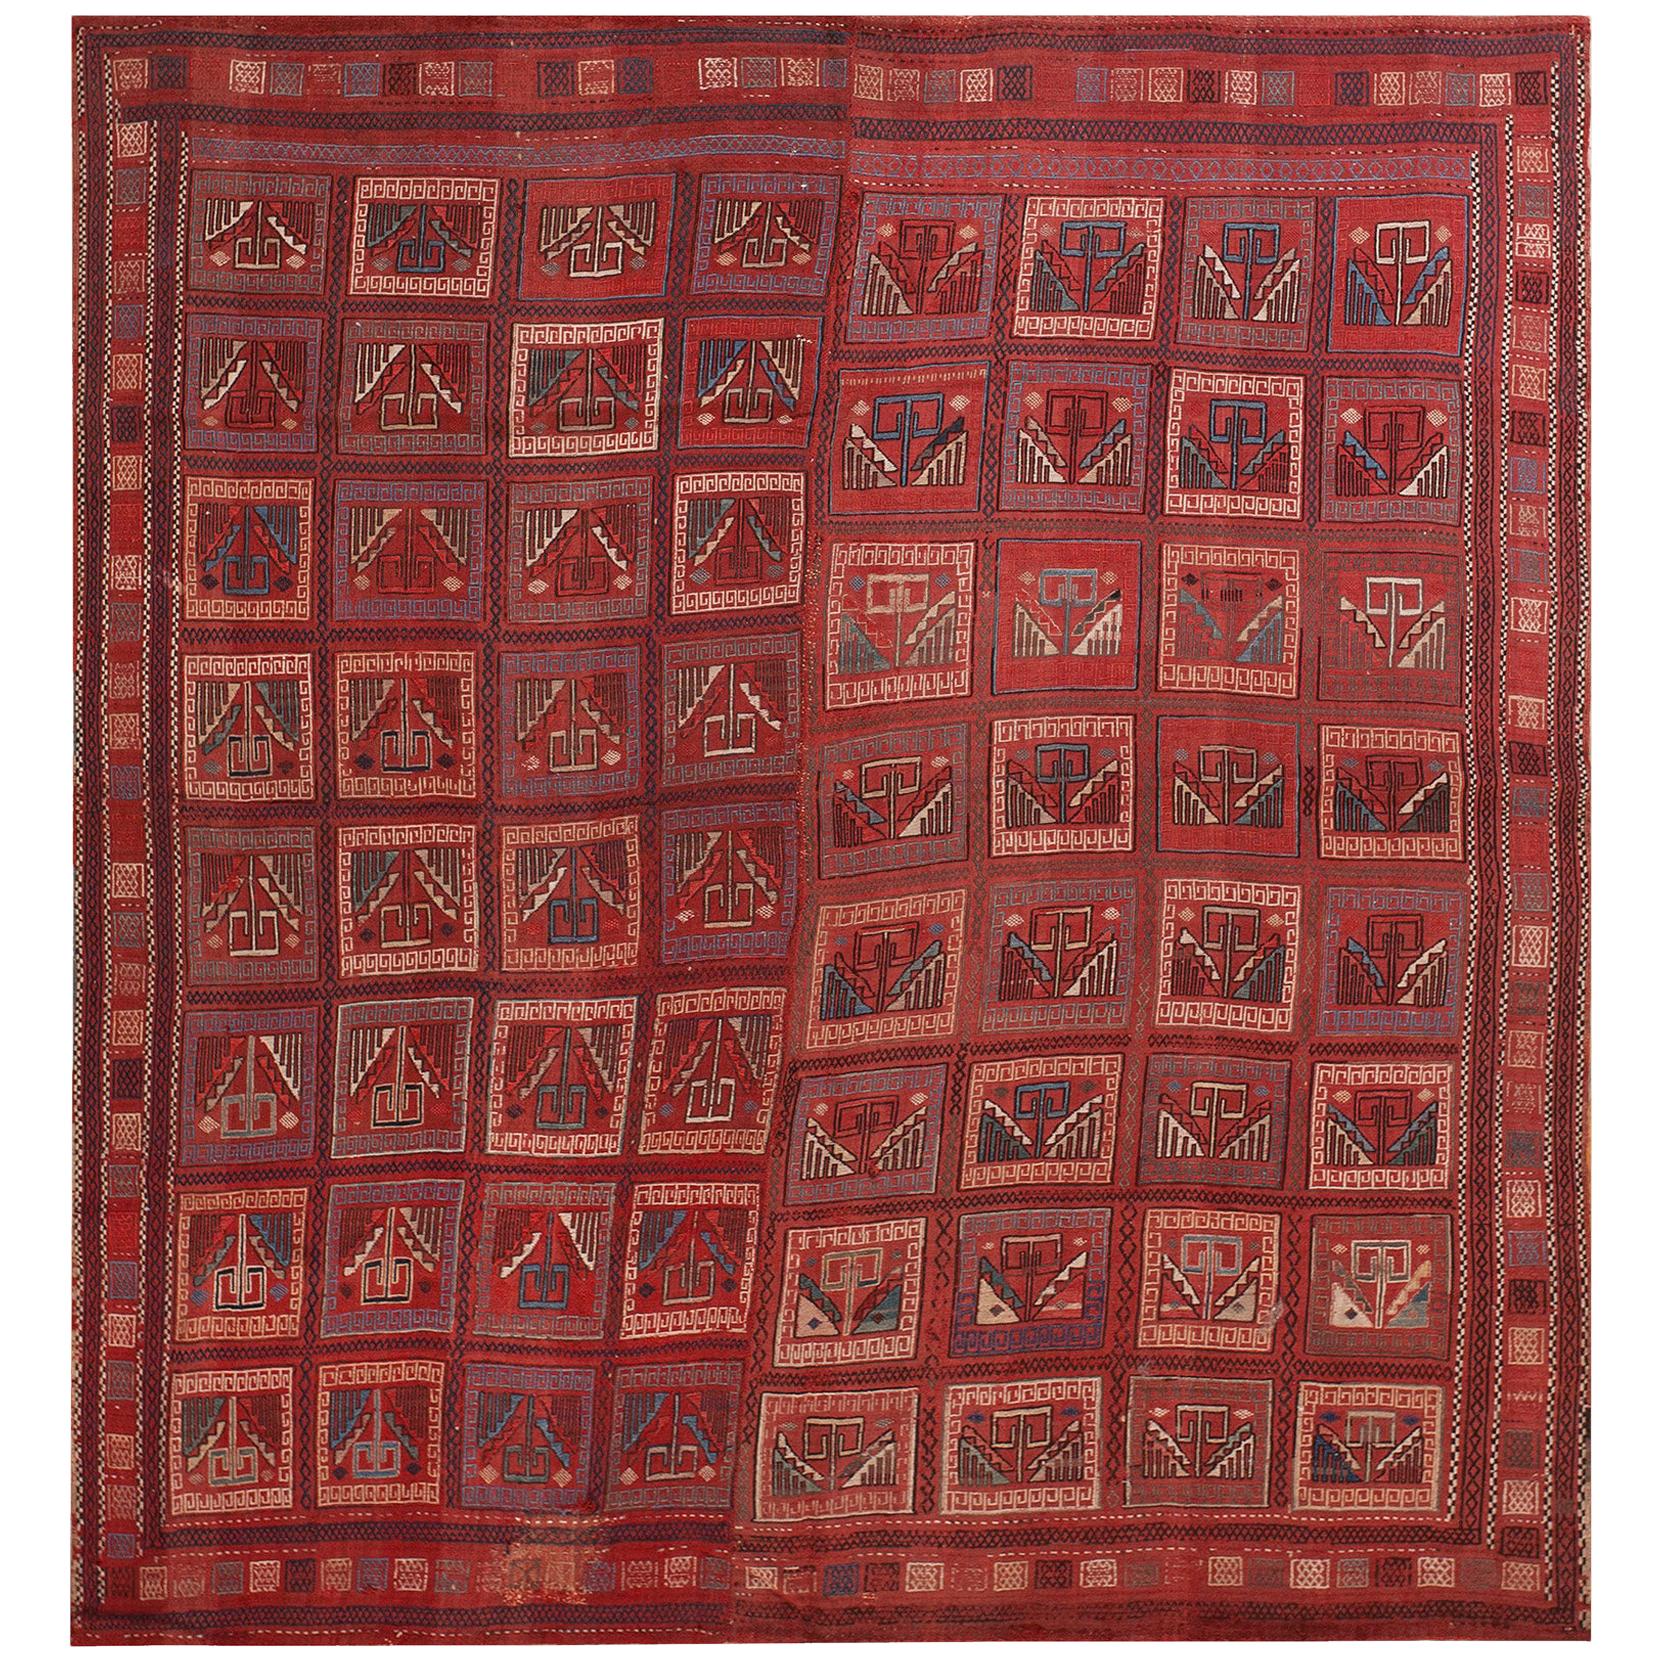 Antiker kaukasischer Teppich aus venezianischem Furnier